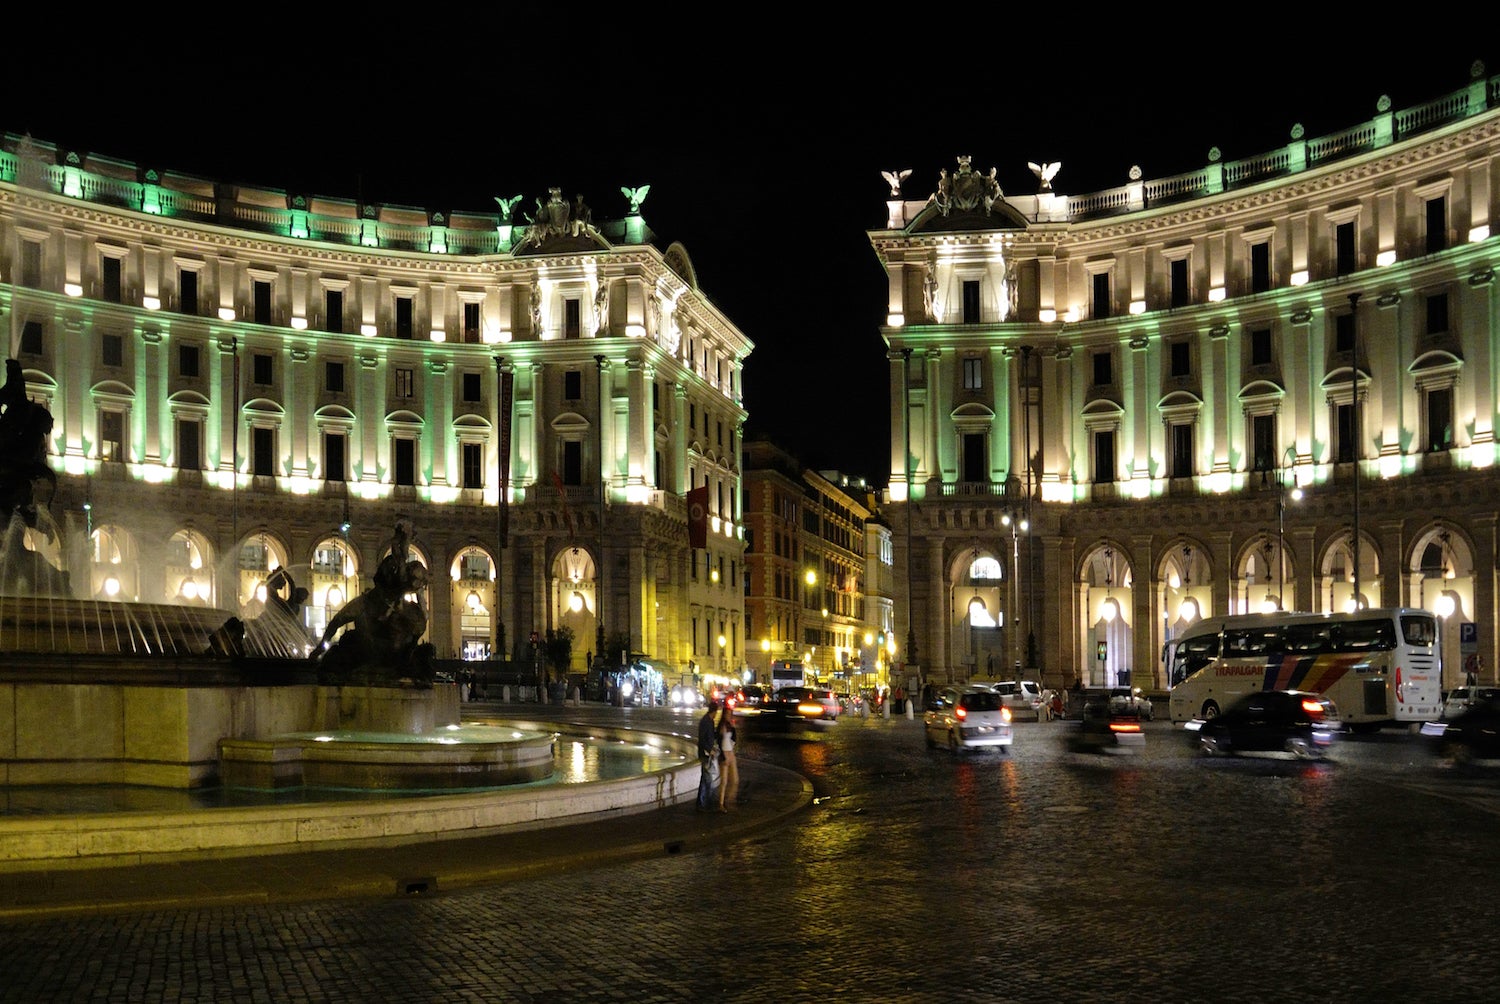 Piazza della Repubblica in Rome at night.